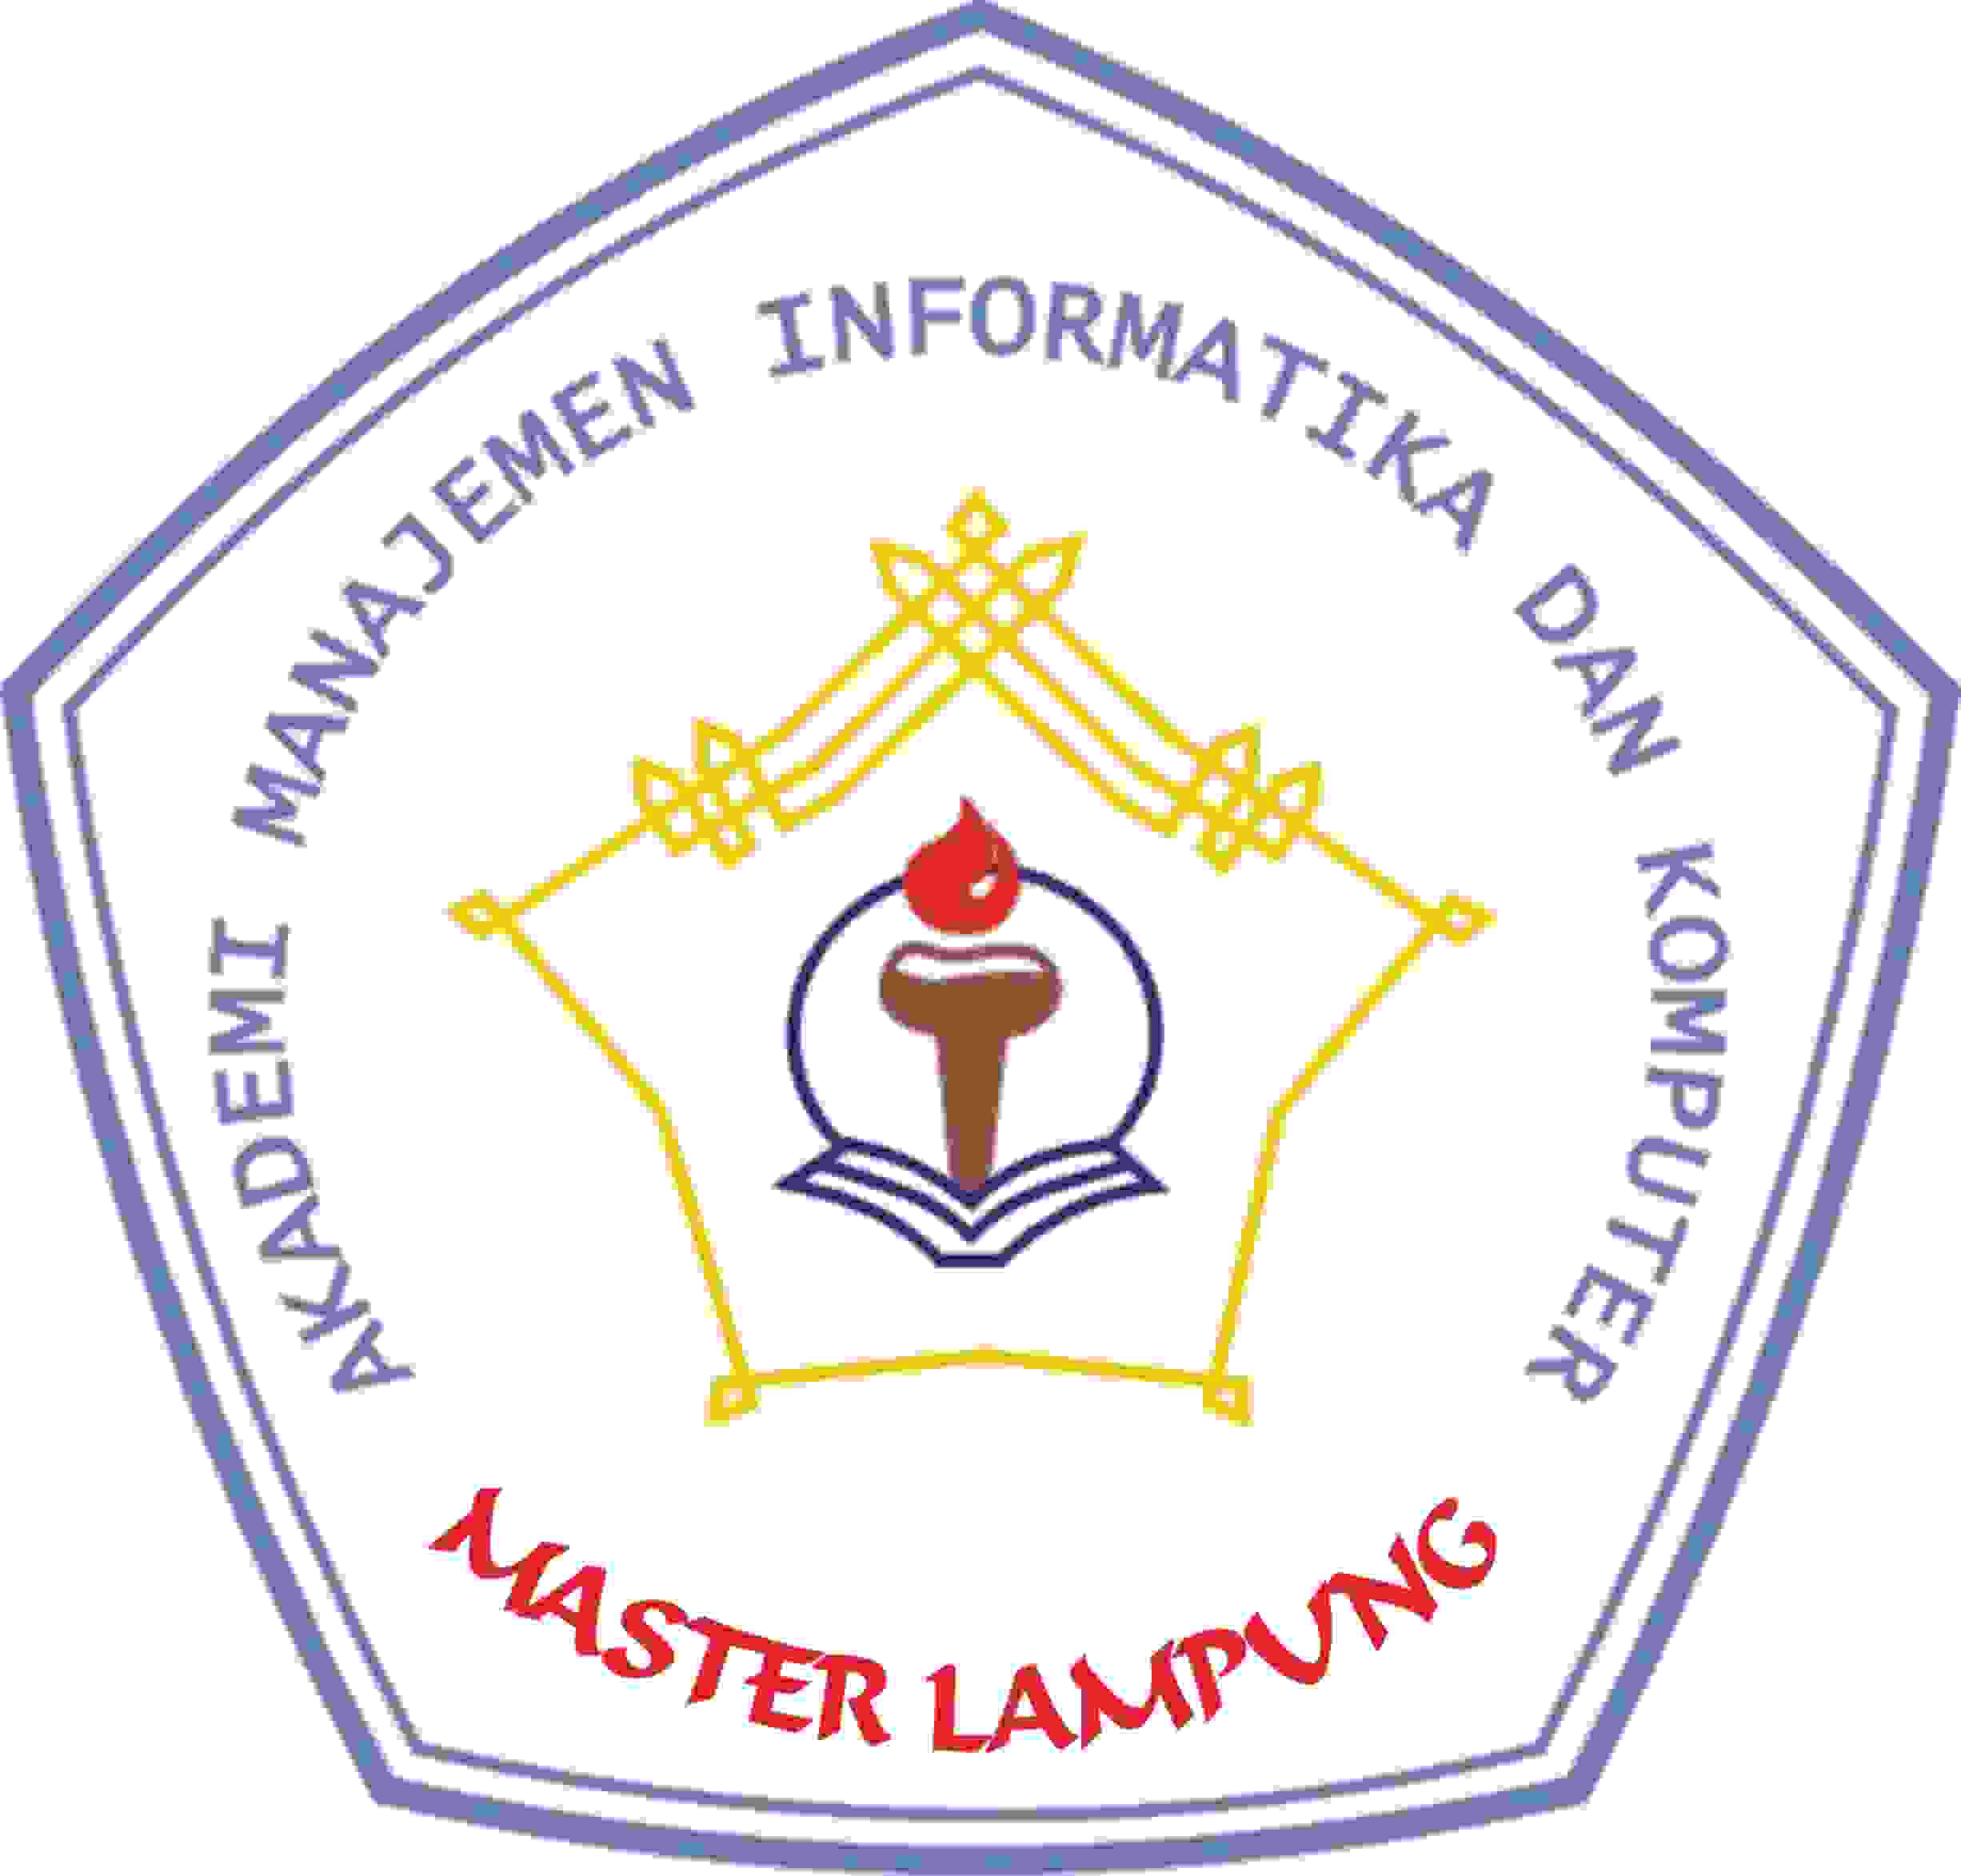 AMIK Master Lampung